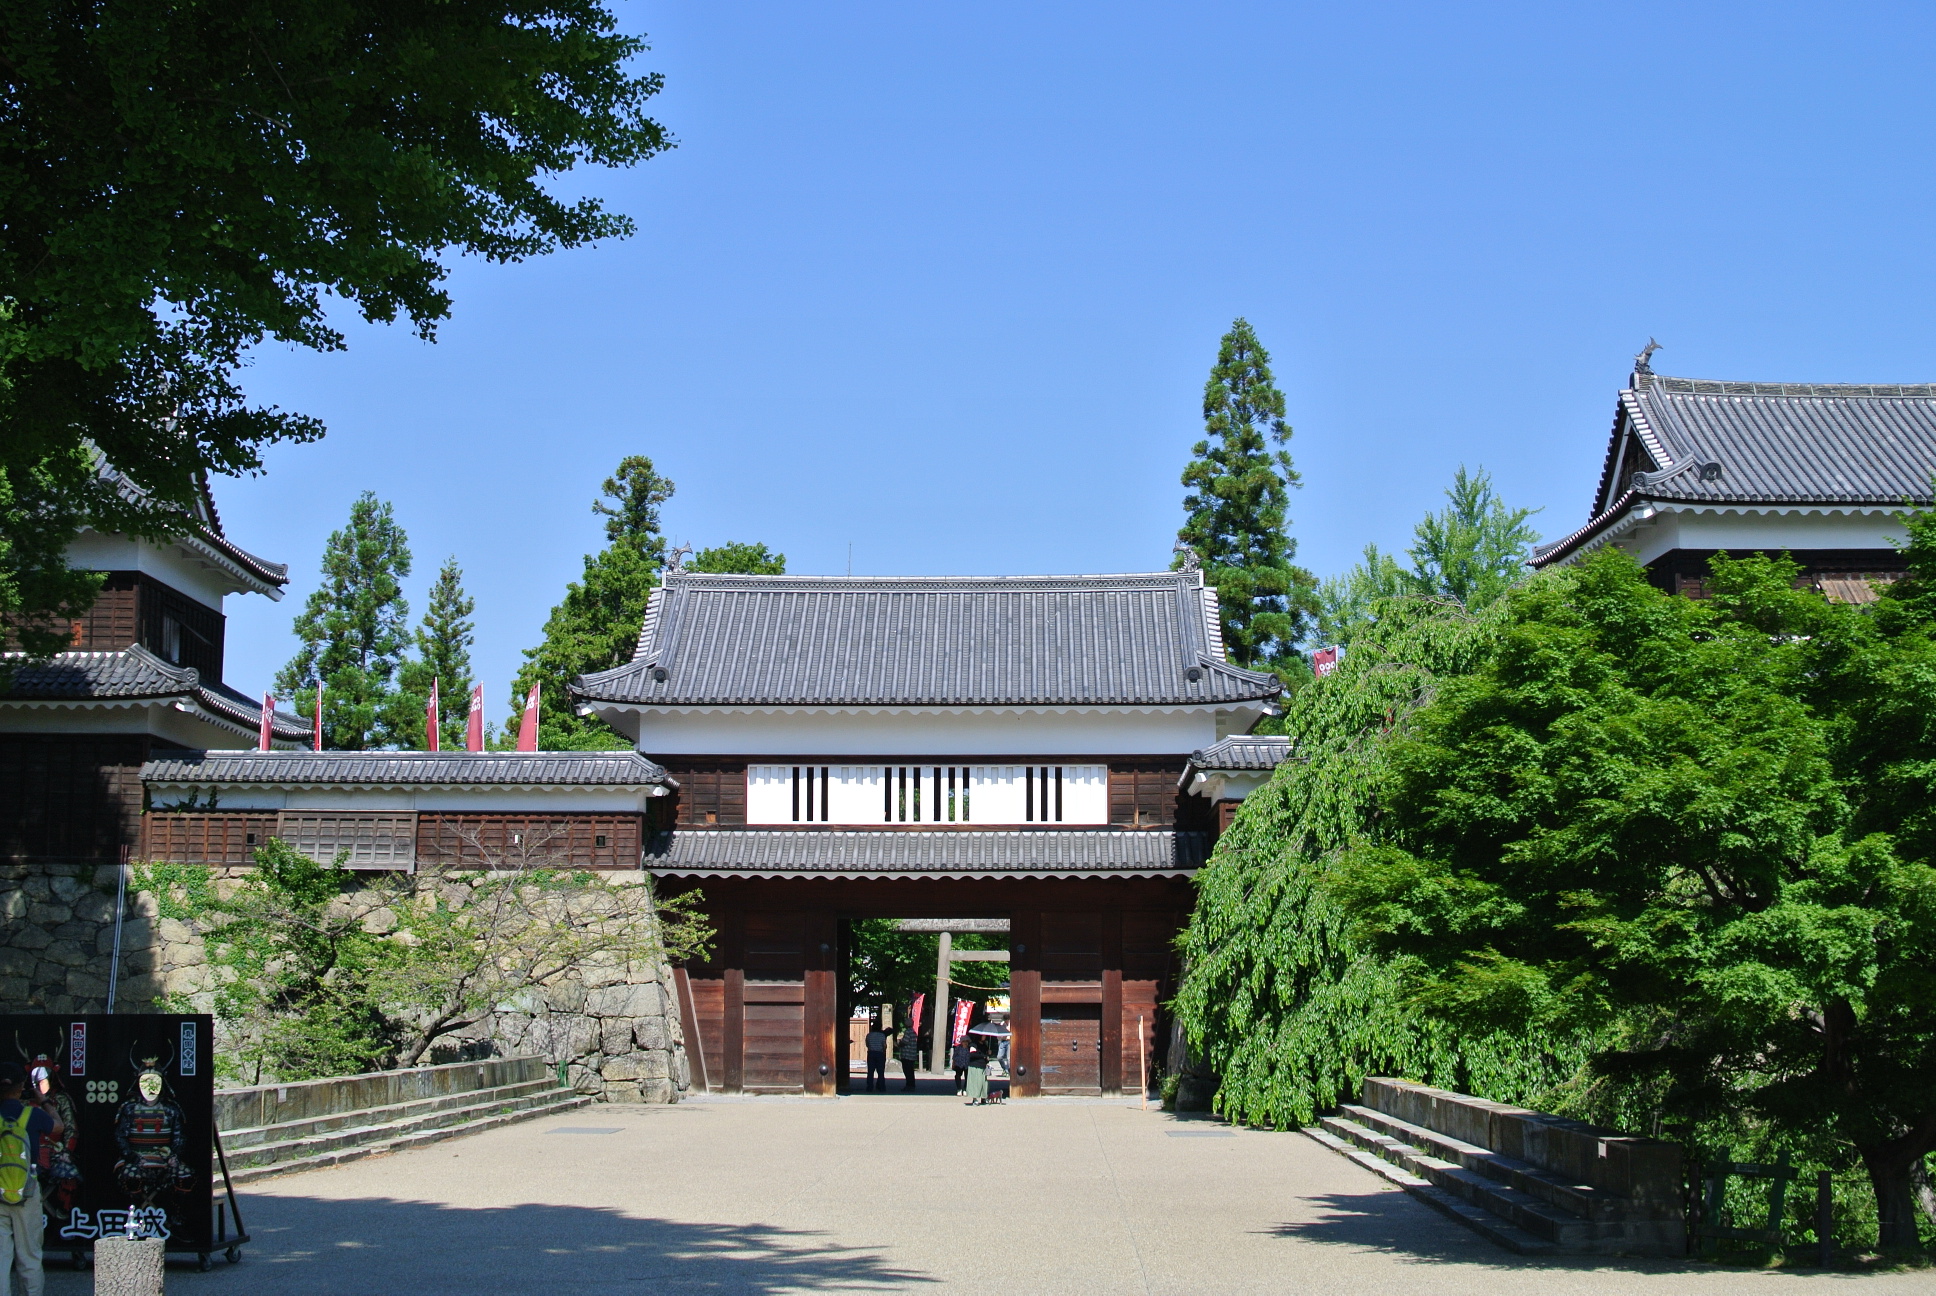 夏の日の上田城跡公園・櫓門。の画像